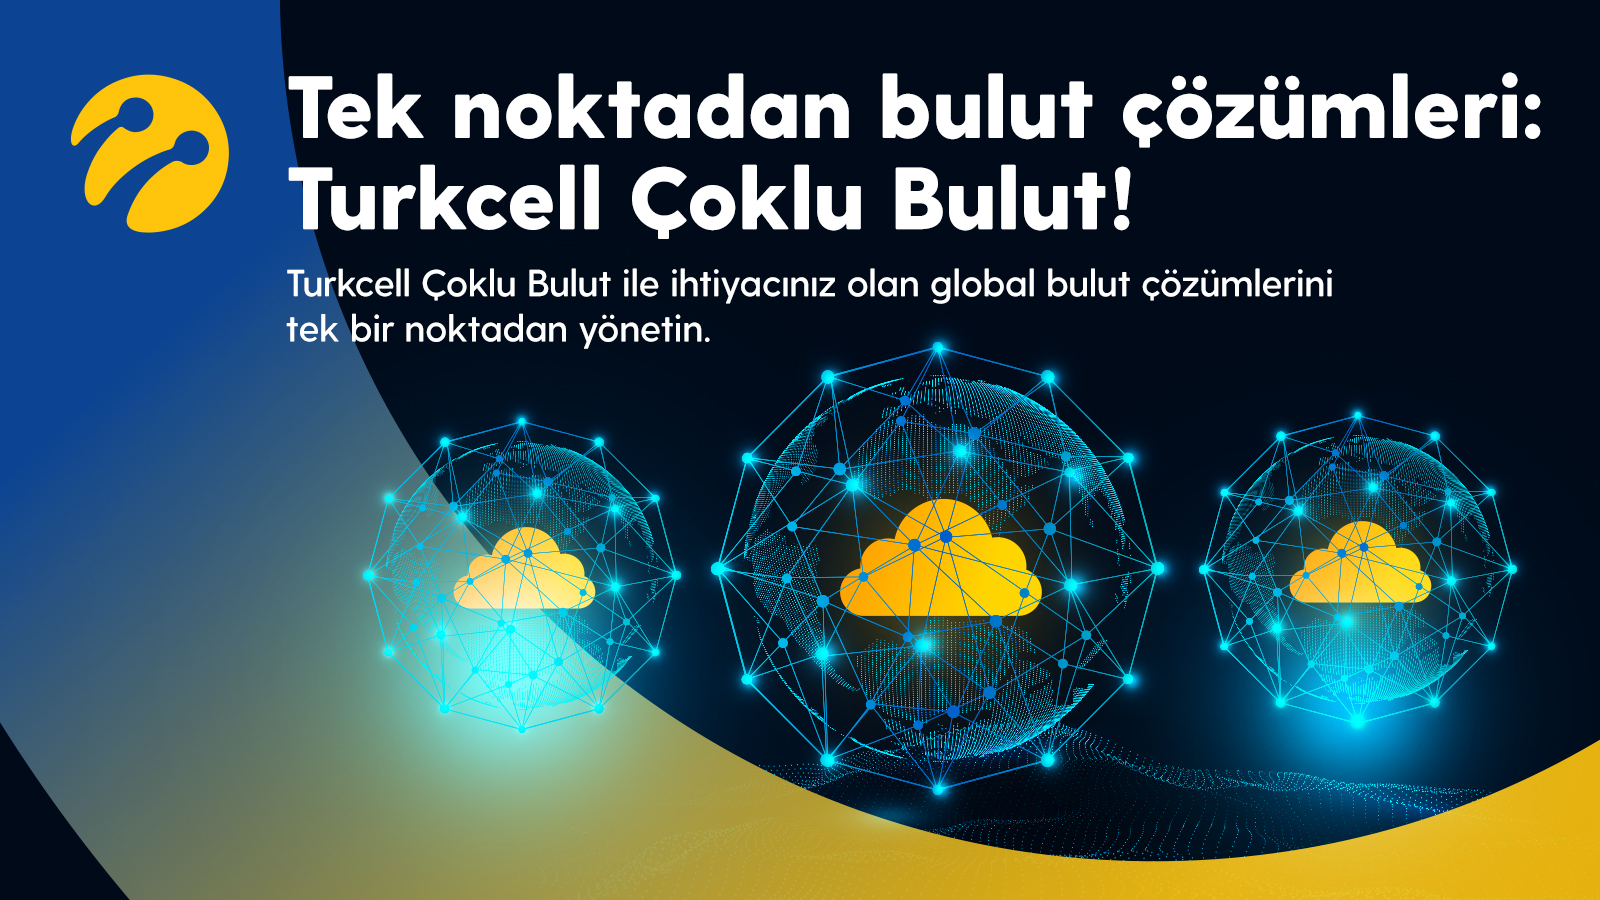 Turkcell Çoklu Bulut (İşini Dijitalde Yönet)